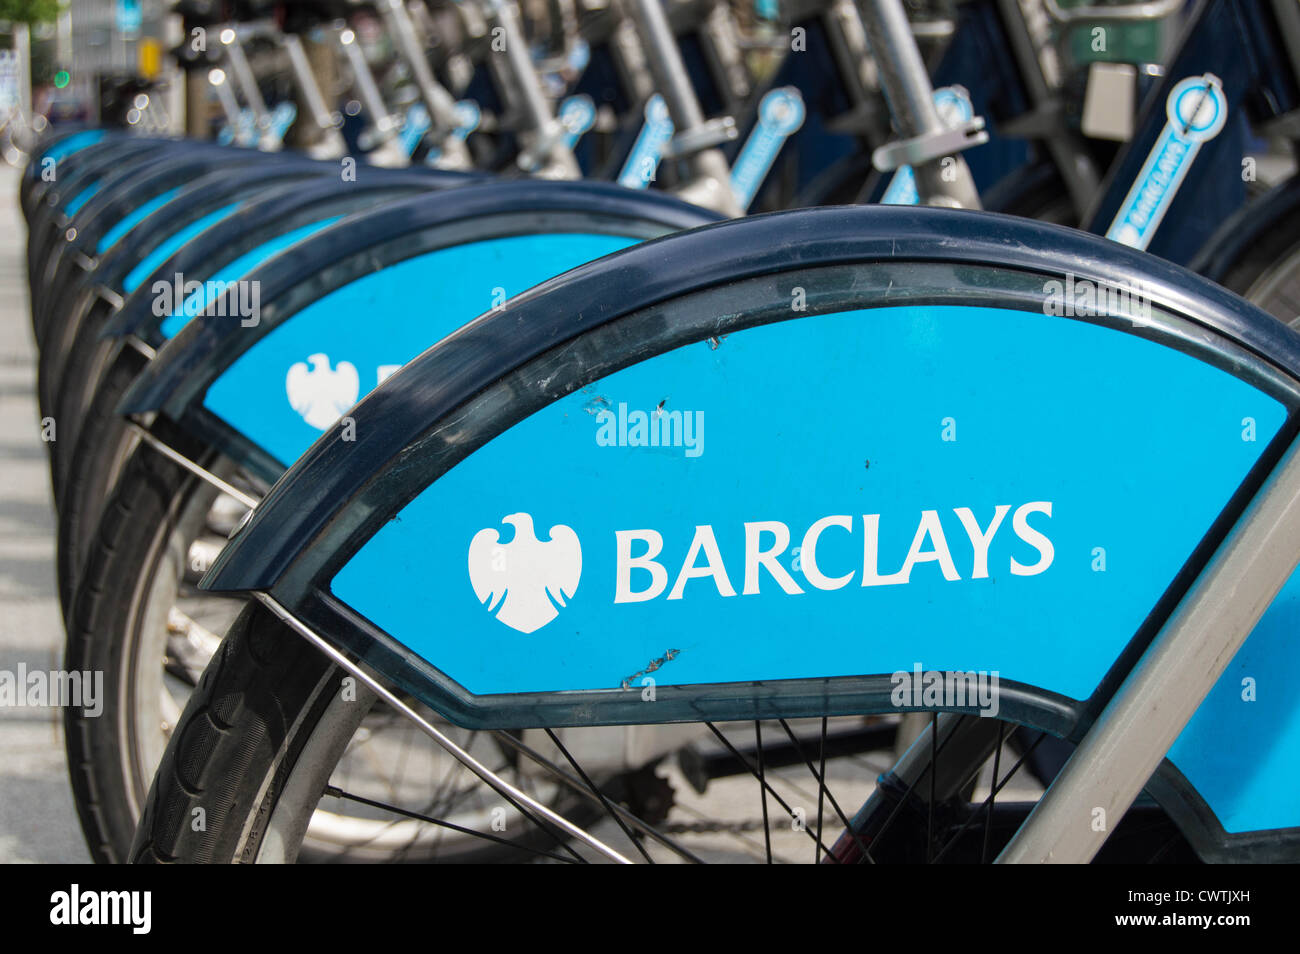 Borris motos, Londres Barclays Cycle Hire Scheme Banque D'Images